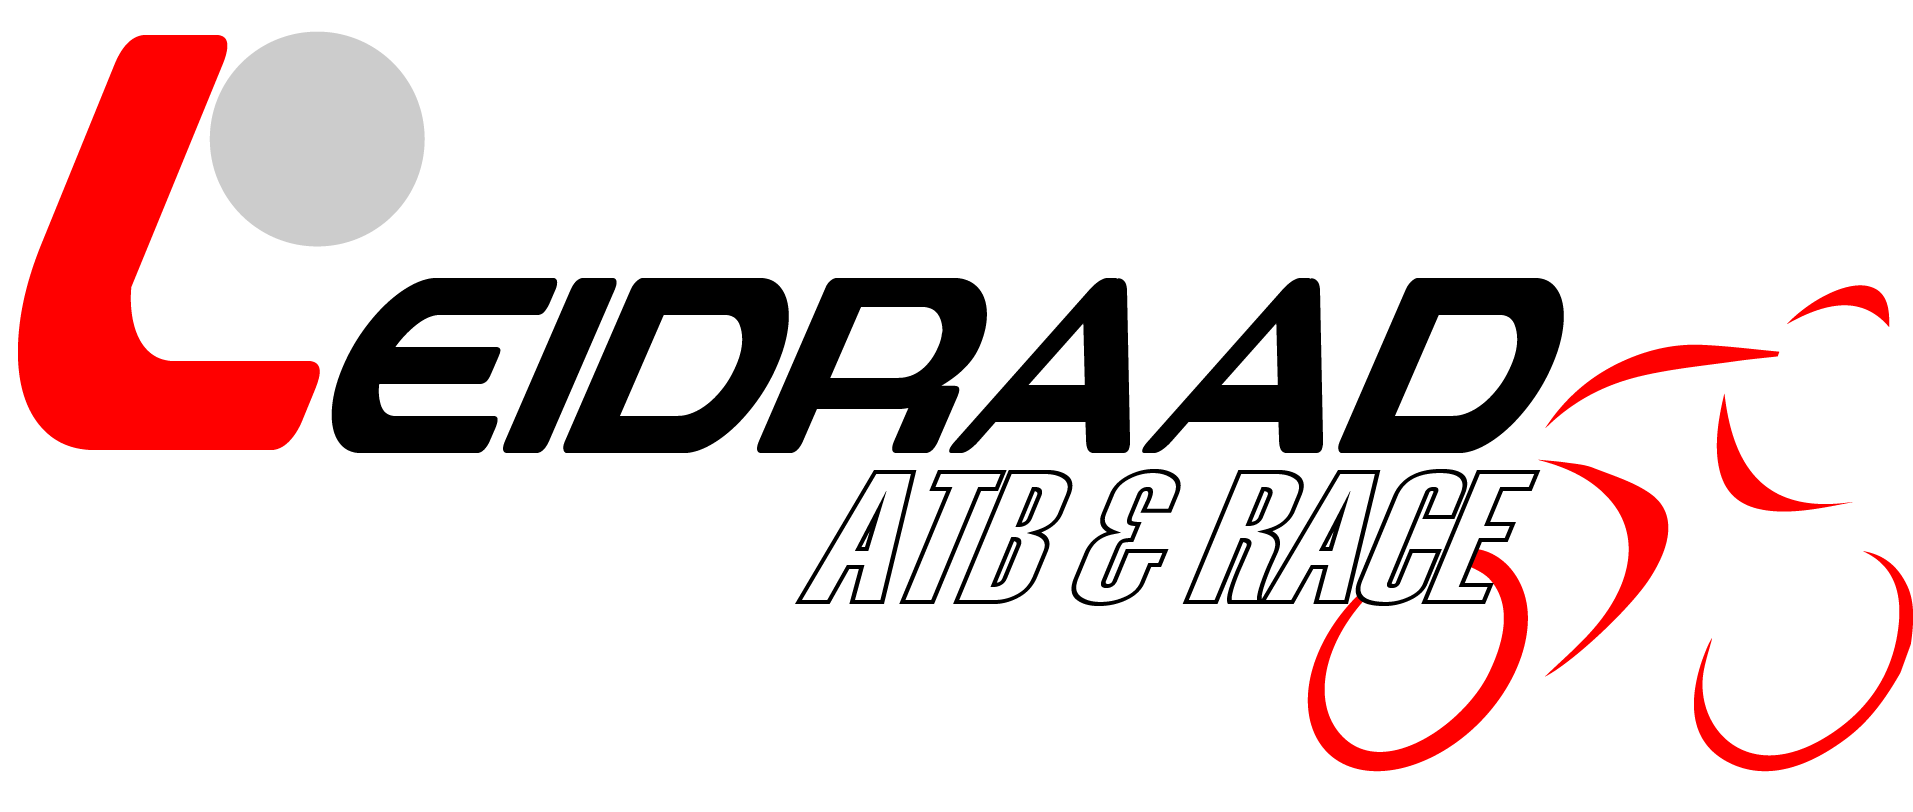 Leidraad ATB & Race